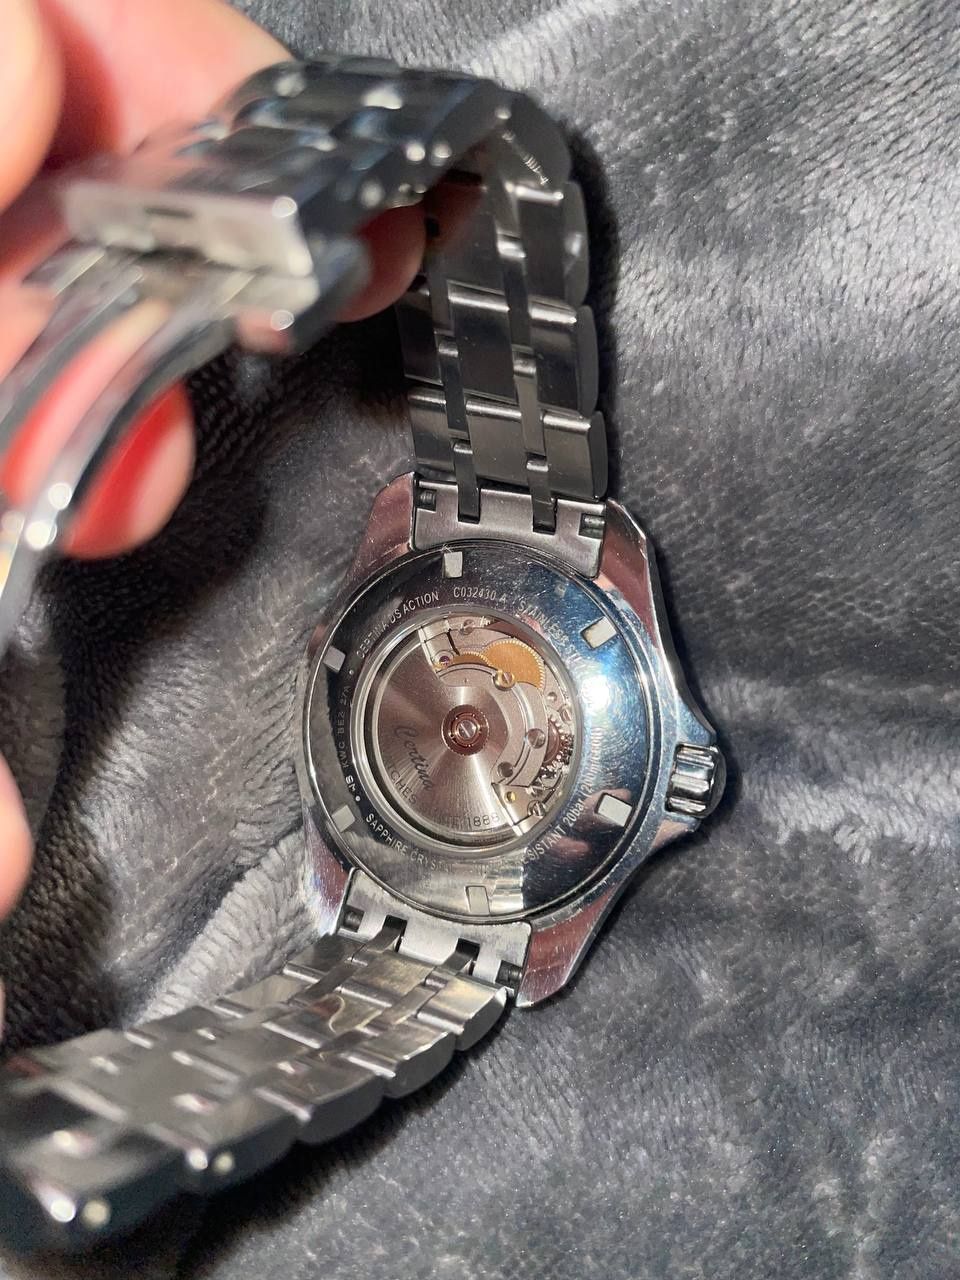 CERTINA Швейцарський чоловічий наручний годинник